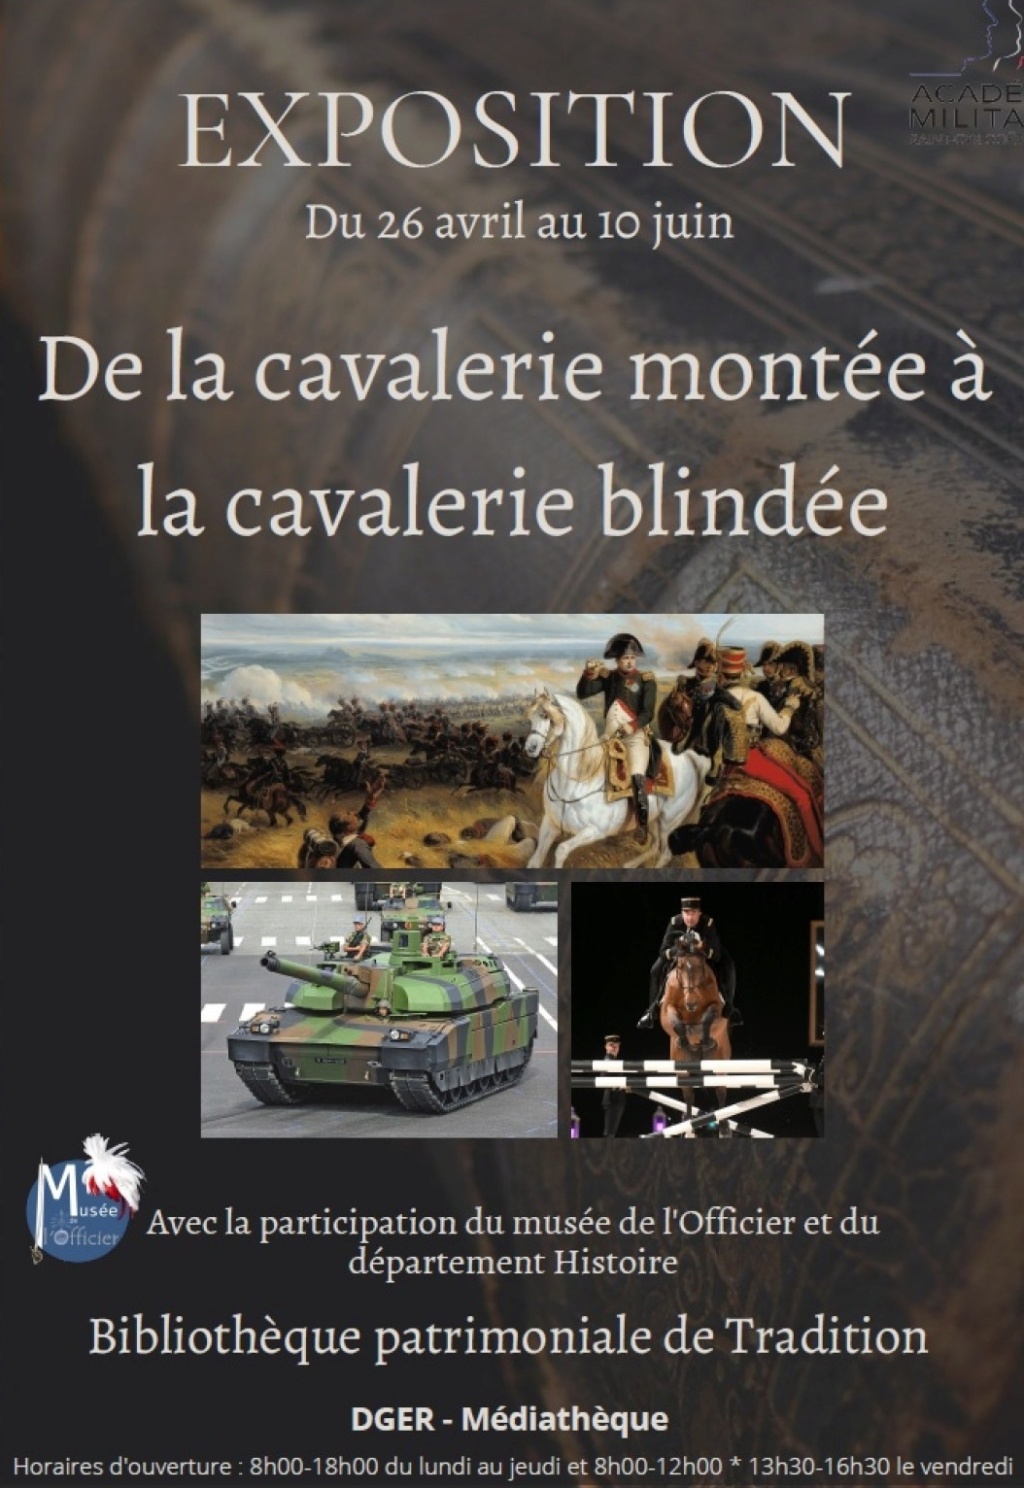 Exposition "De la cavalerie montée à la cavalerie blindée" Flyer-10